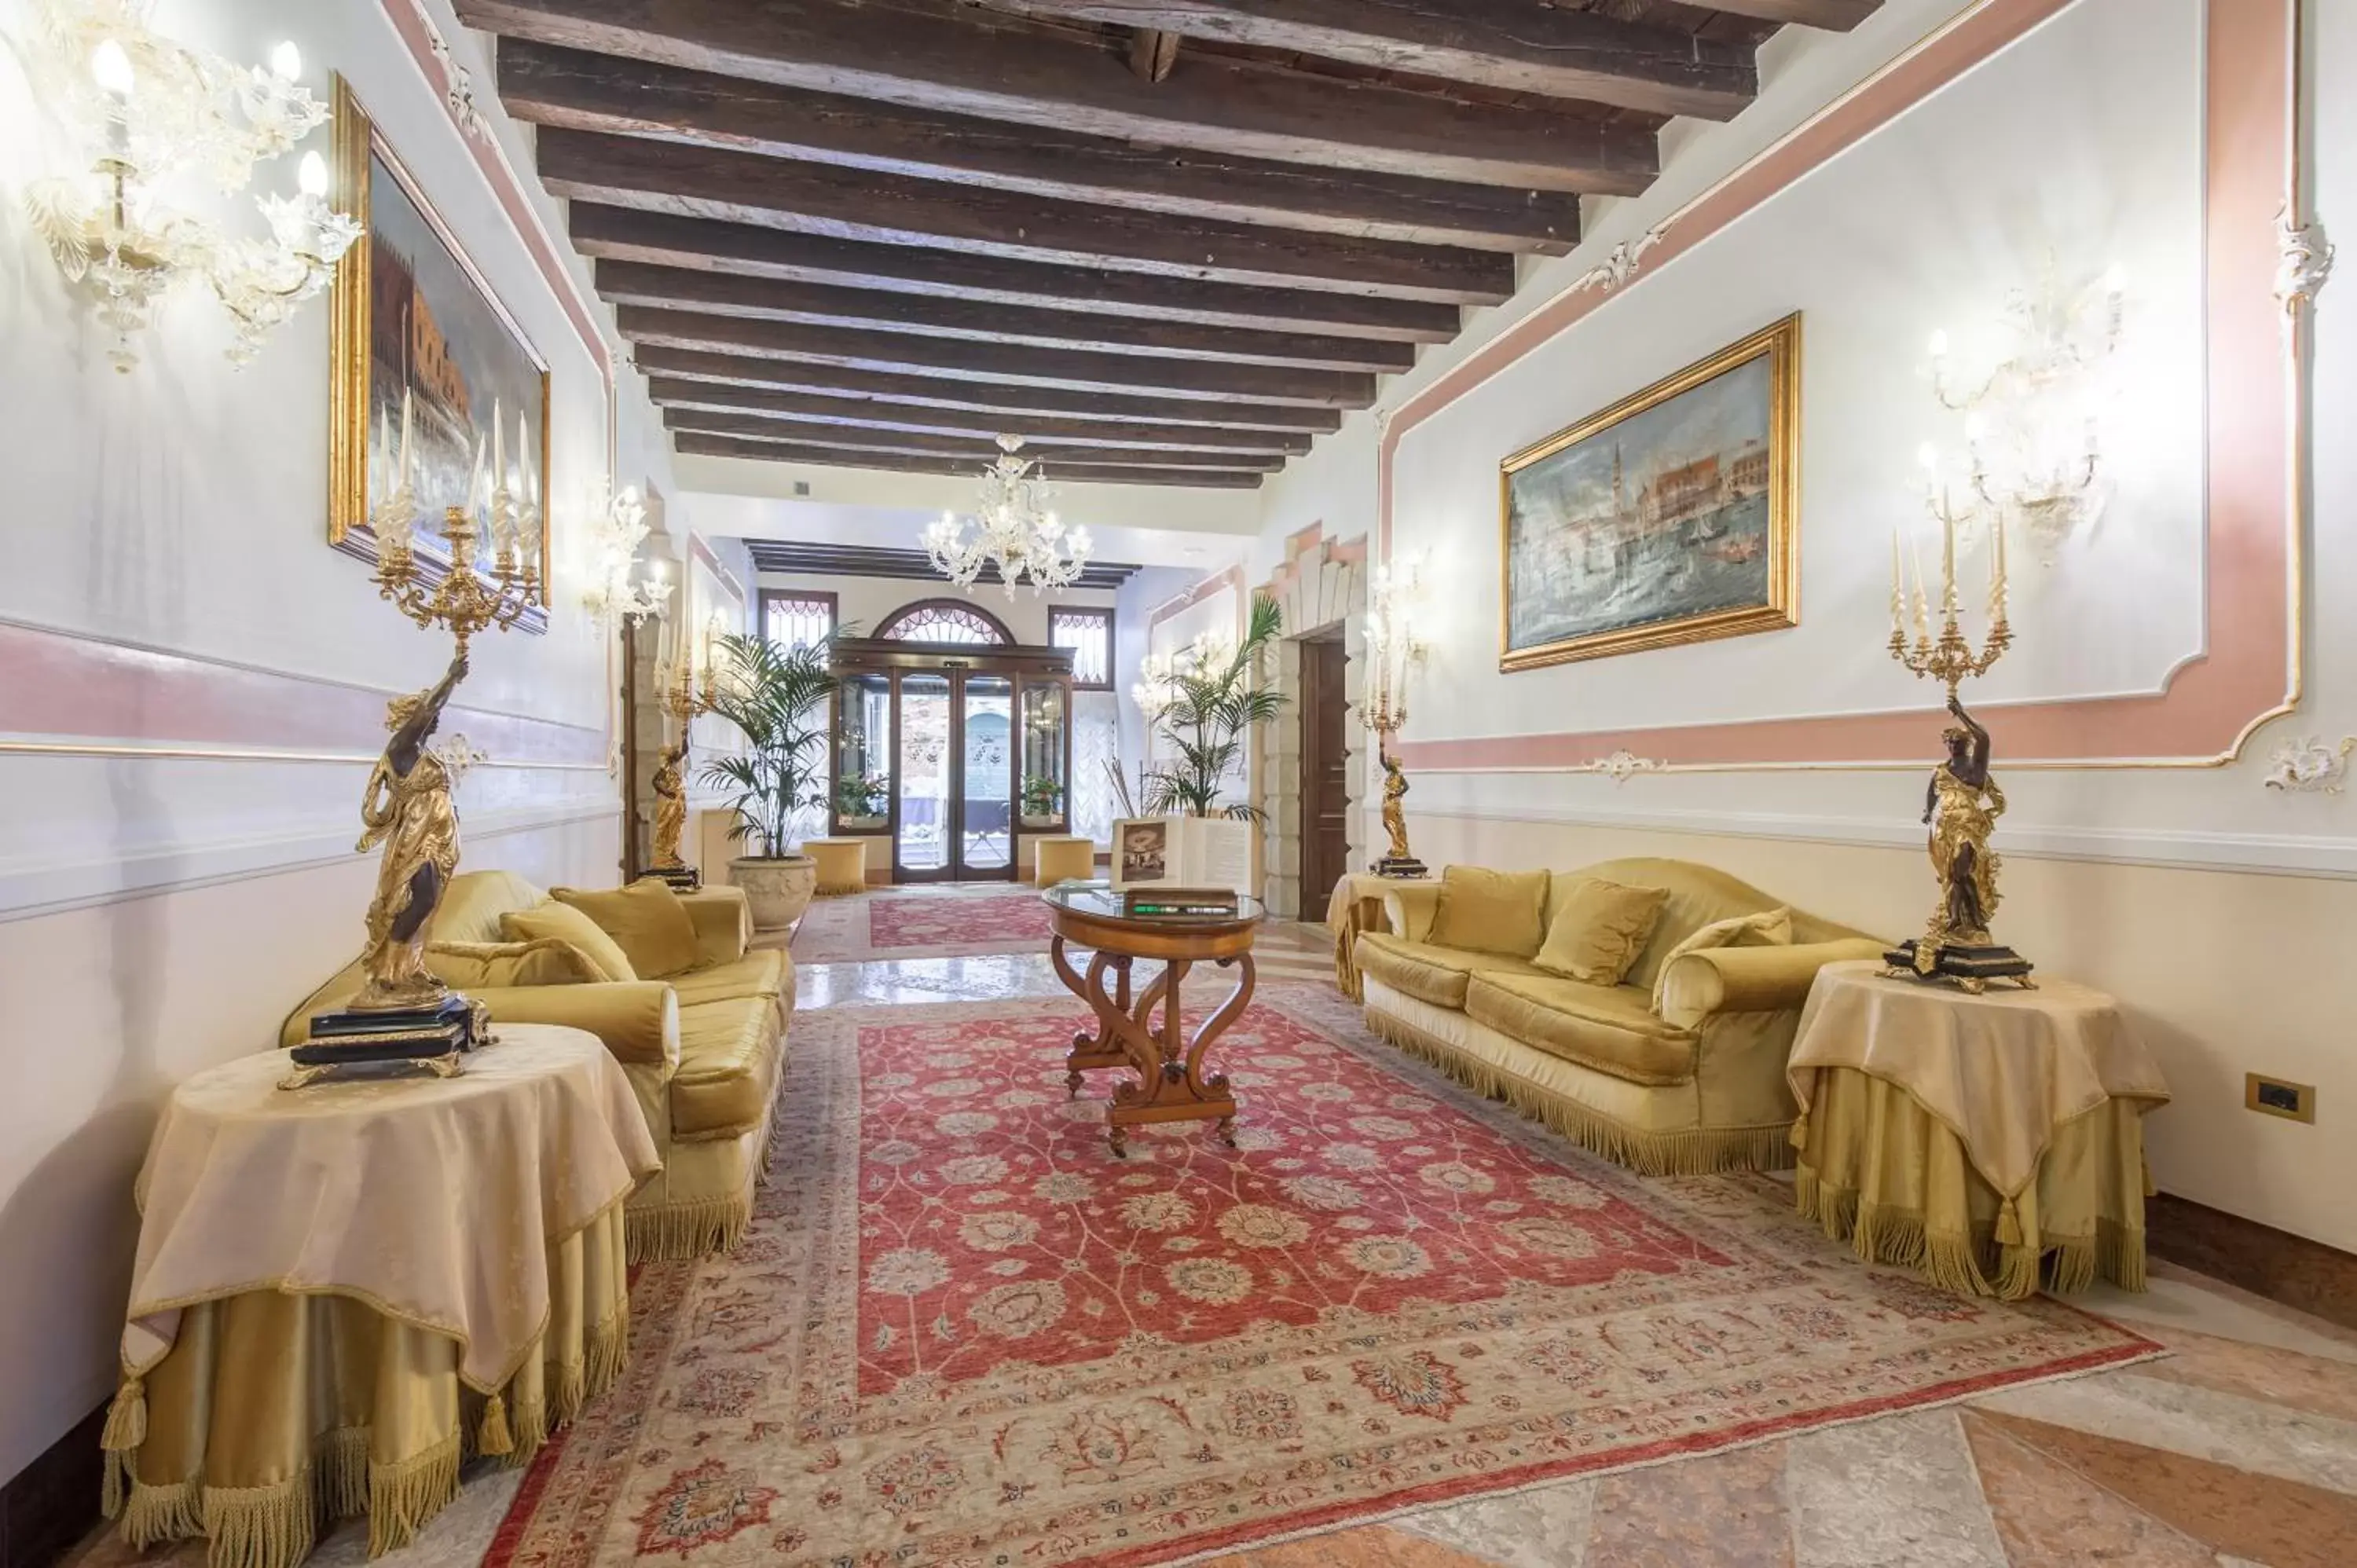 Lobby or reception in Hotel Ai Cavalieri di Venezia